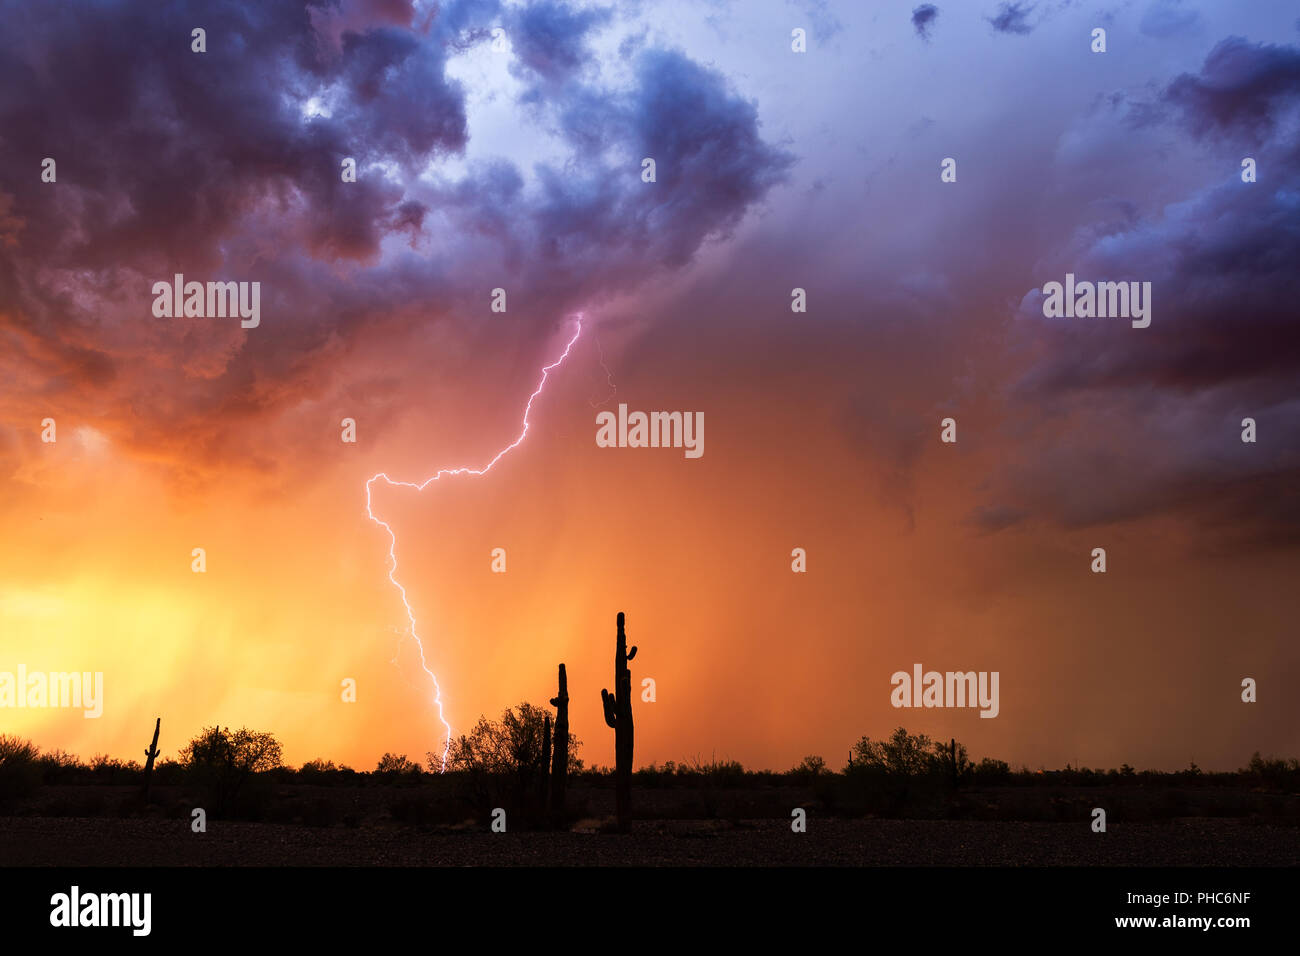 Die Wüstenlandschaft von Arizona bei Sonnenuntergang mit Blitz, dramatischen Sturmwolken und farbenfrohem Himmel Stockfoto